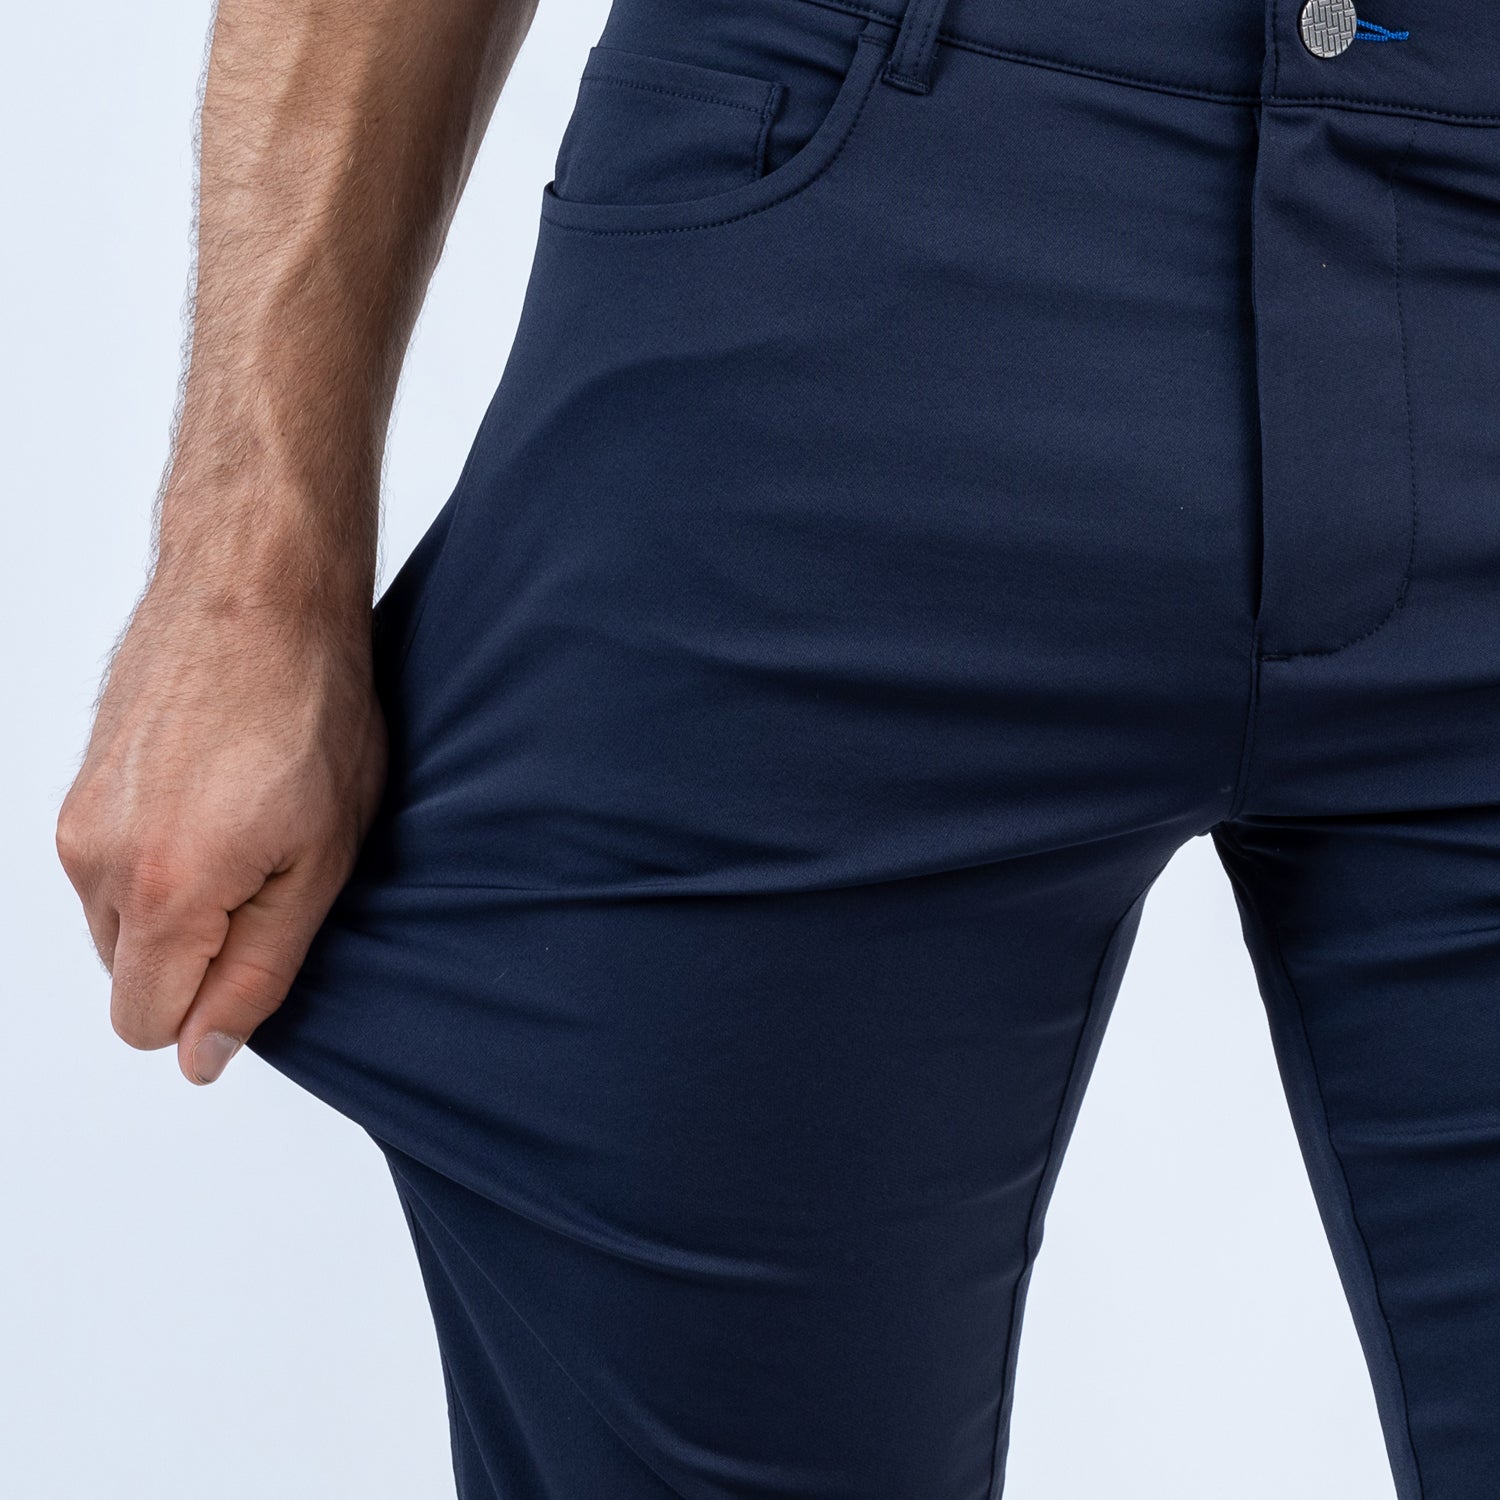 How Should Dress Pants Fit?